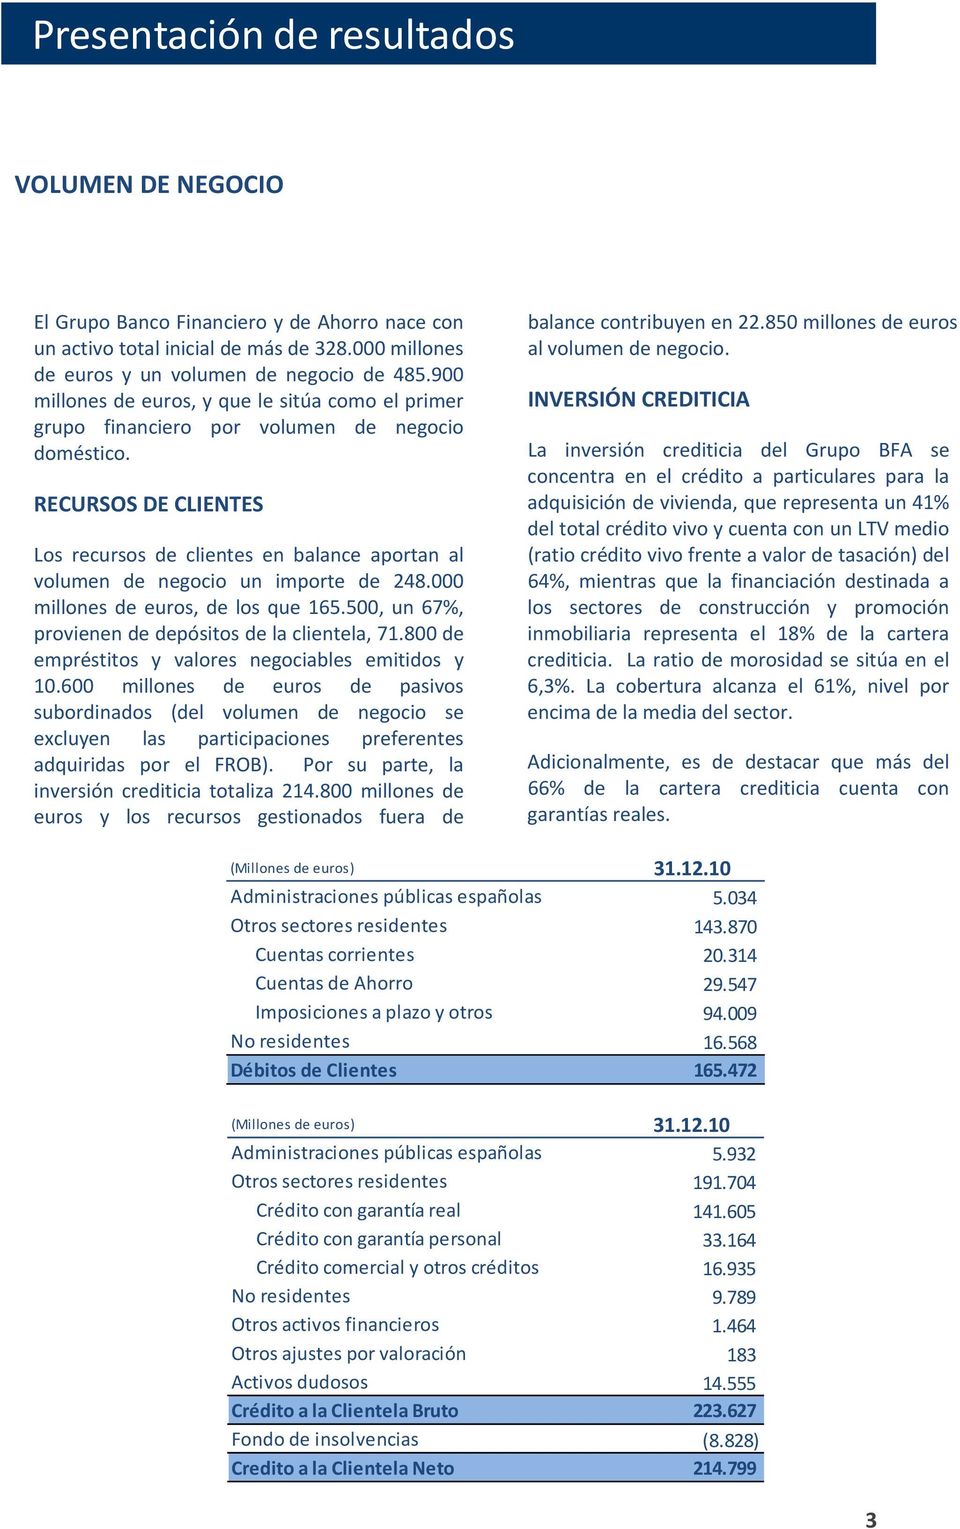 RECURSOS DE CLIENTES Los recursos de clientes en balance aportan al volumen de negocio un importe de 248.000 millones de euros, de los que 165.500, un 67%, provienen de depósitos de la clientela, 71.